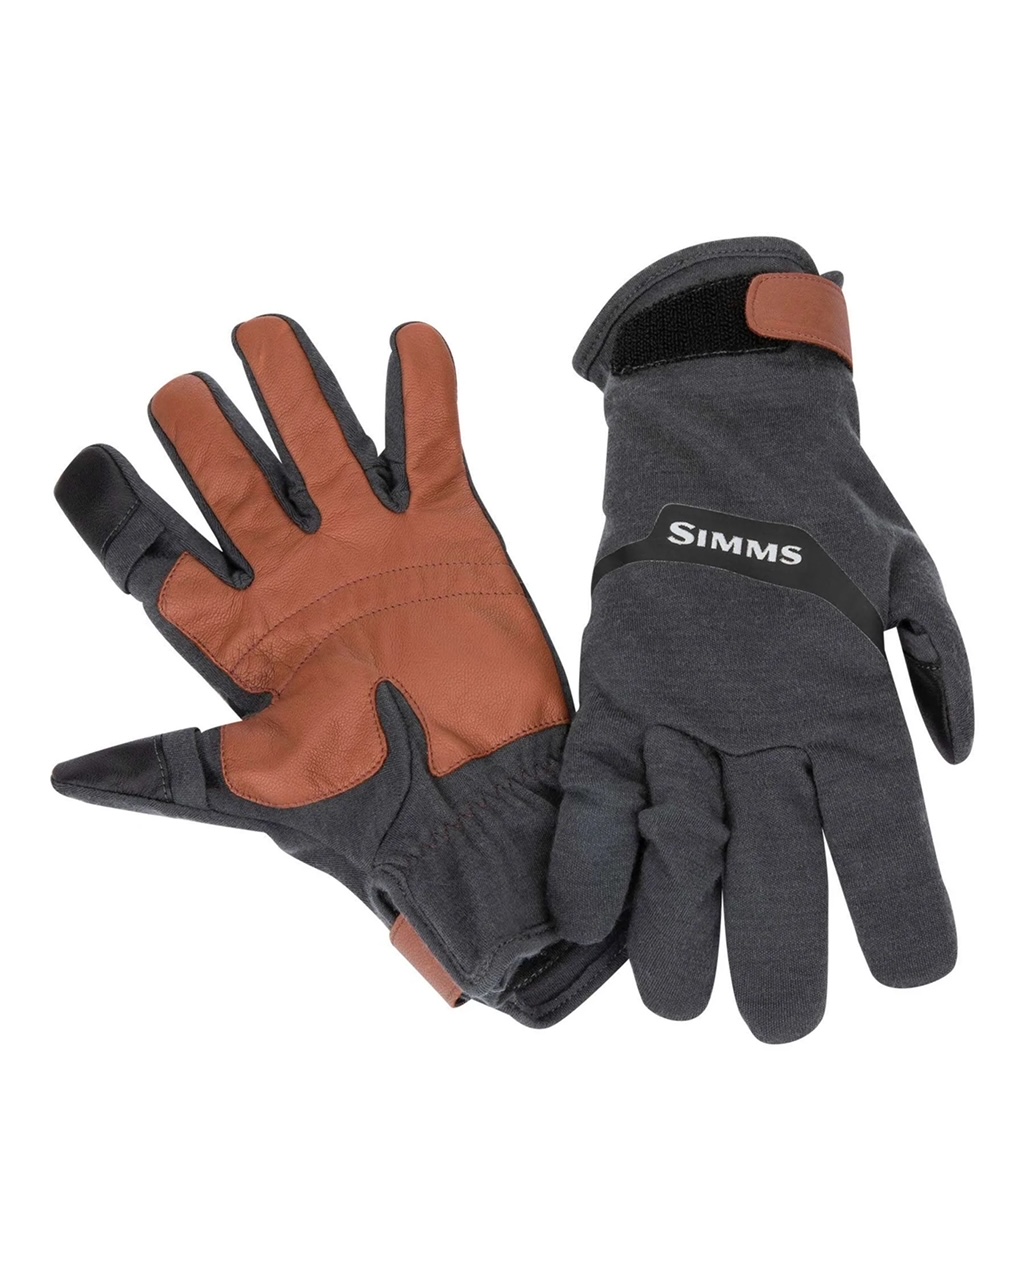 Simms Lightweight Wool Flex Glove - XL